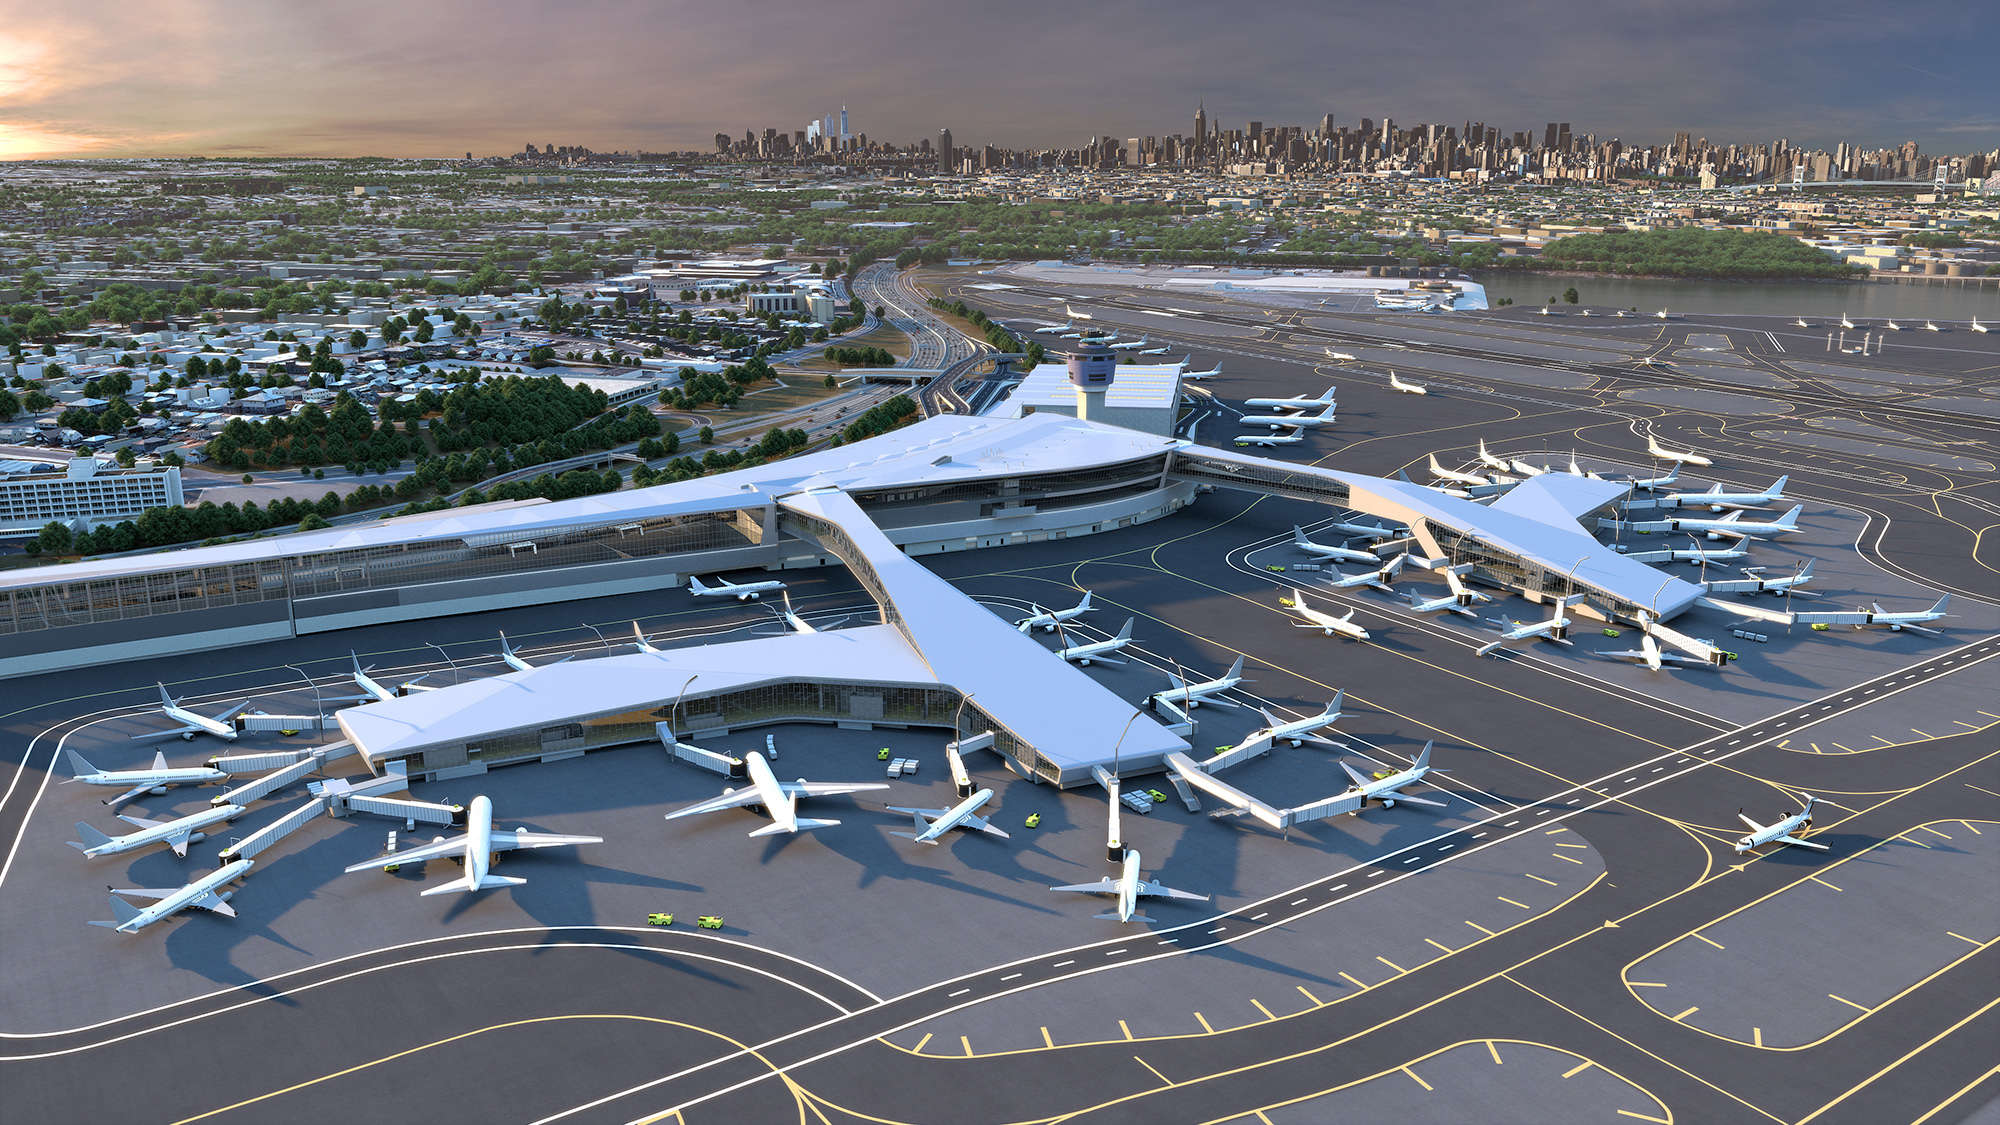 Rendering of the new LGA airport